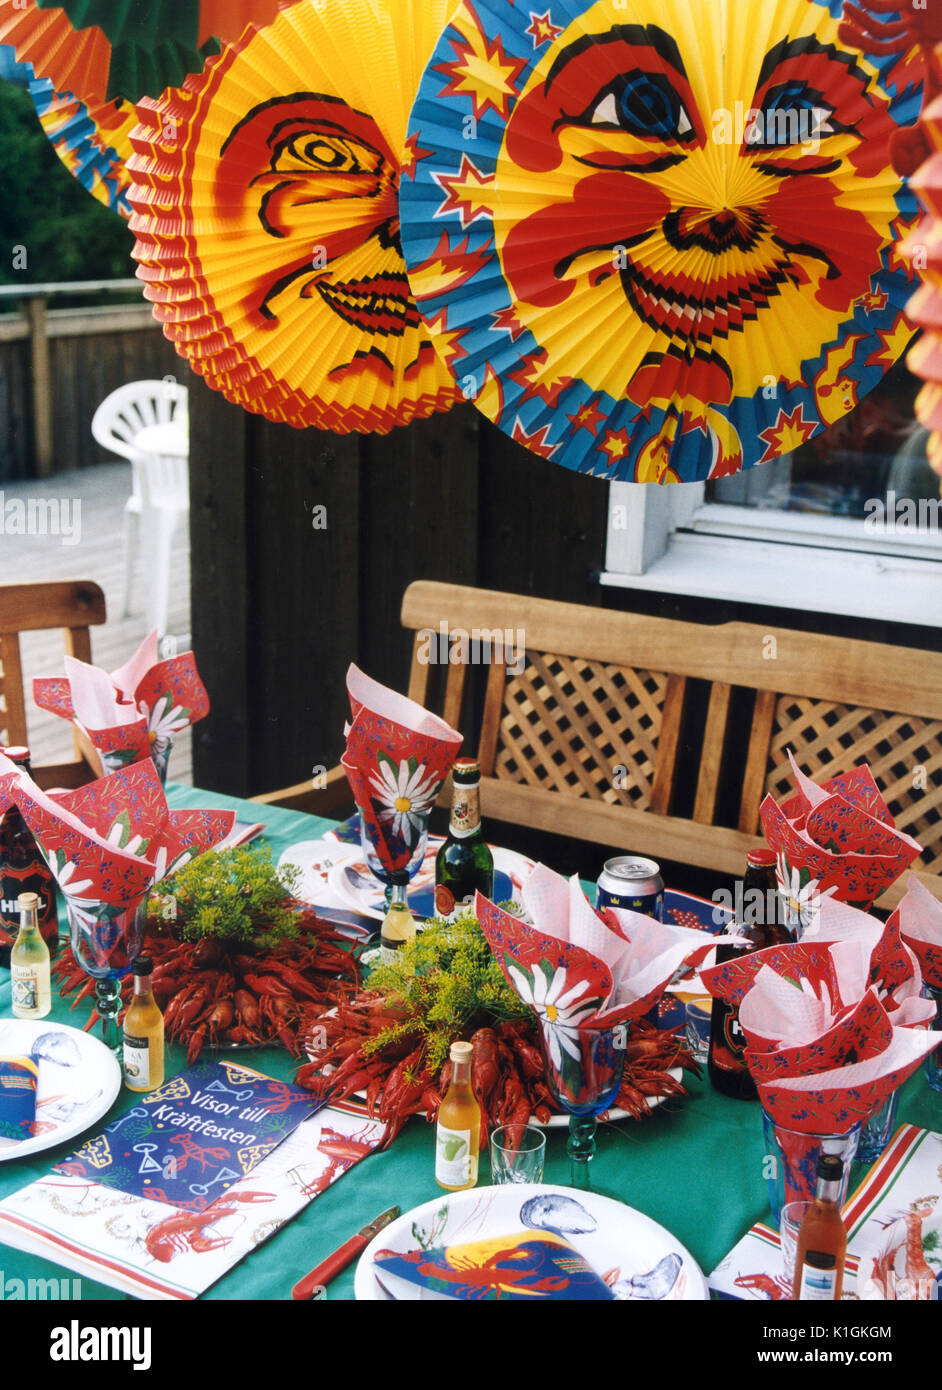 PARTY des écrevisses la table est décorée pour une partie et les lampes sont accrochés 2005 Banque D'Images